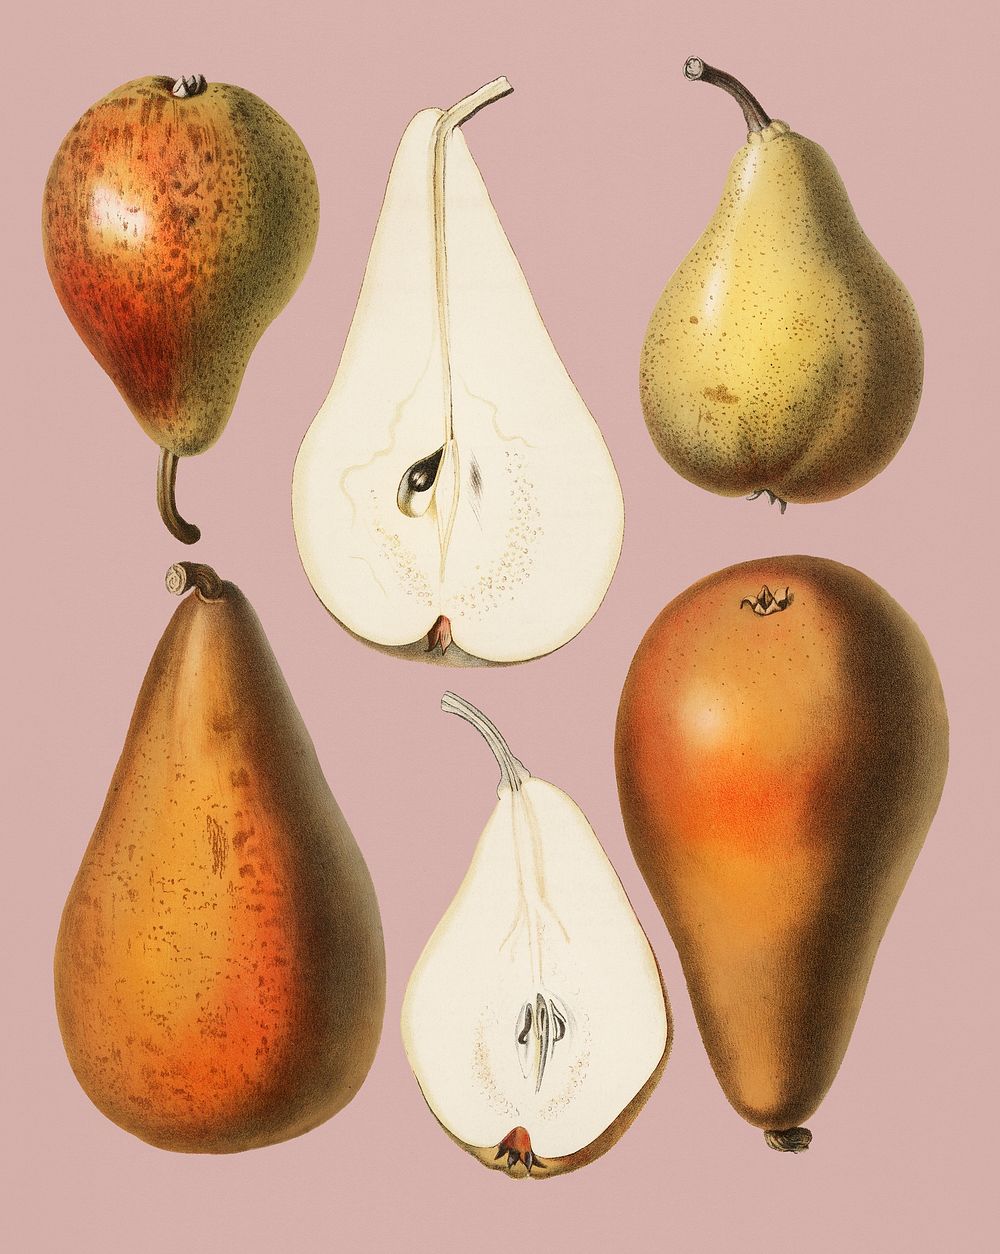 Vintage Illustration of fresh pears.